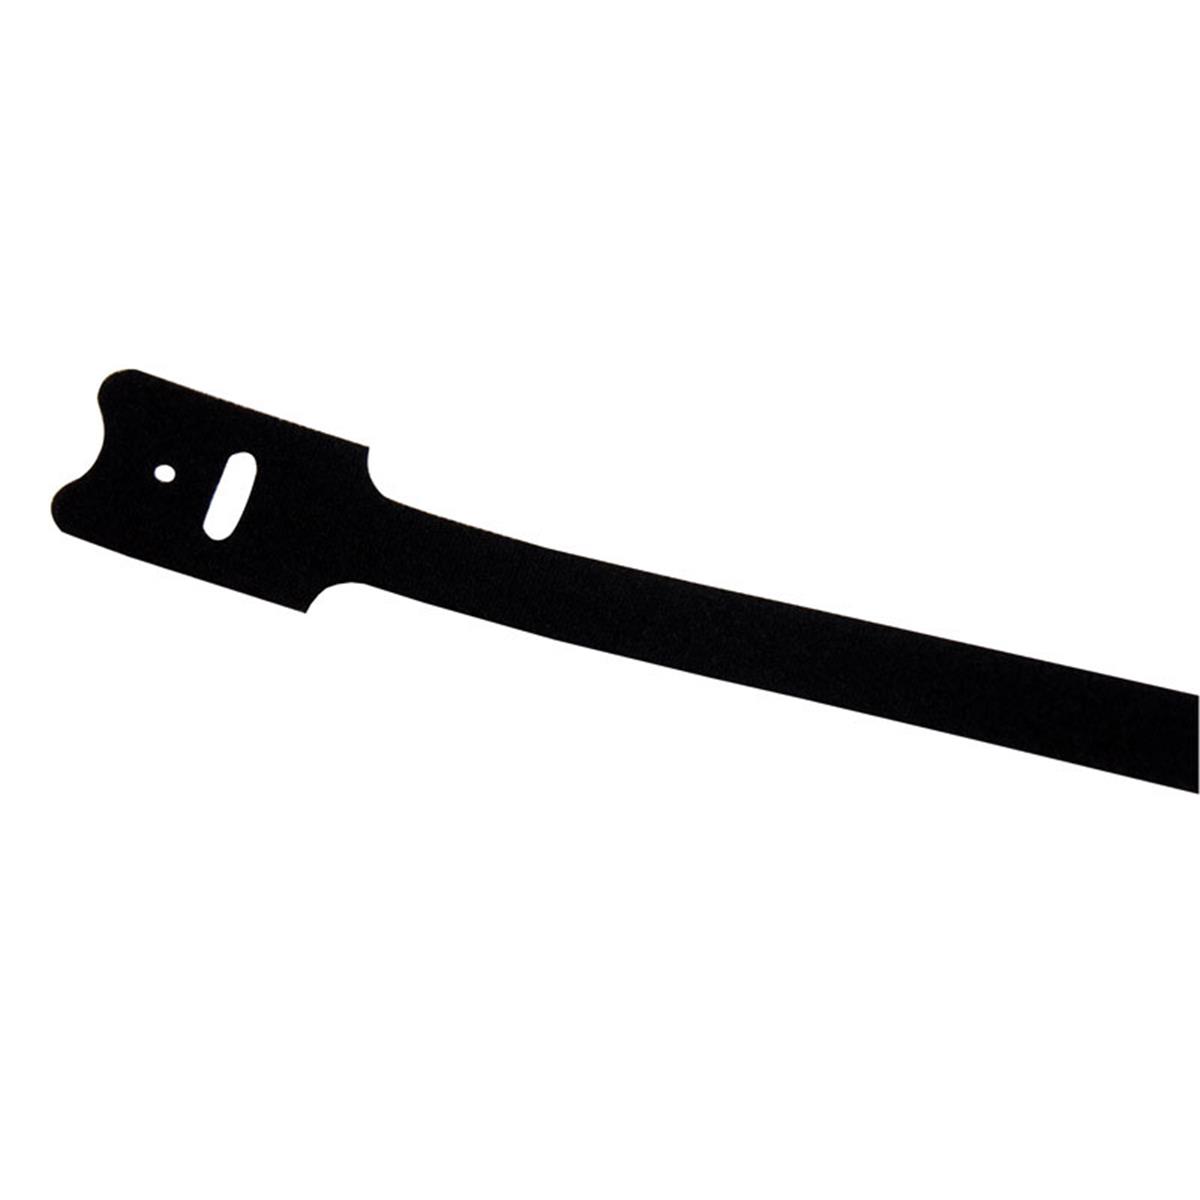 3091949 8 In. Black Grip-strip Hook & Loop Fasteners - Pack Of 5